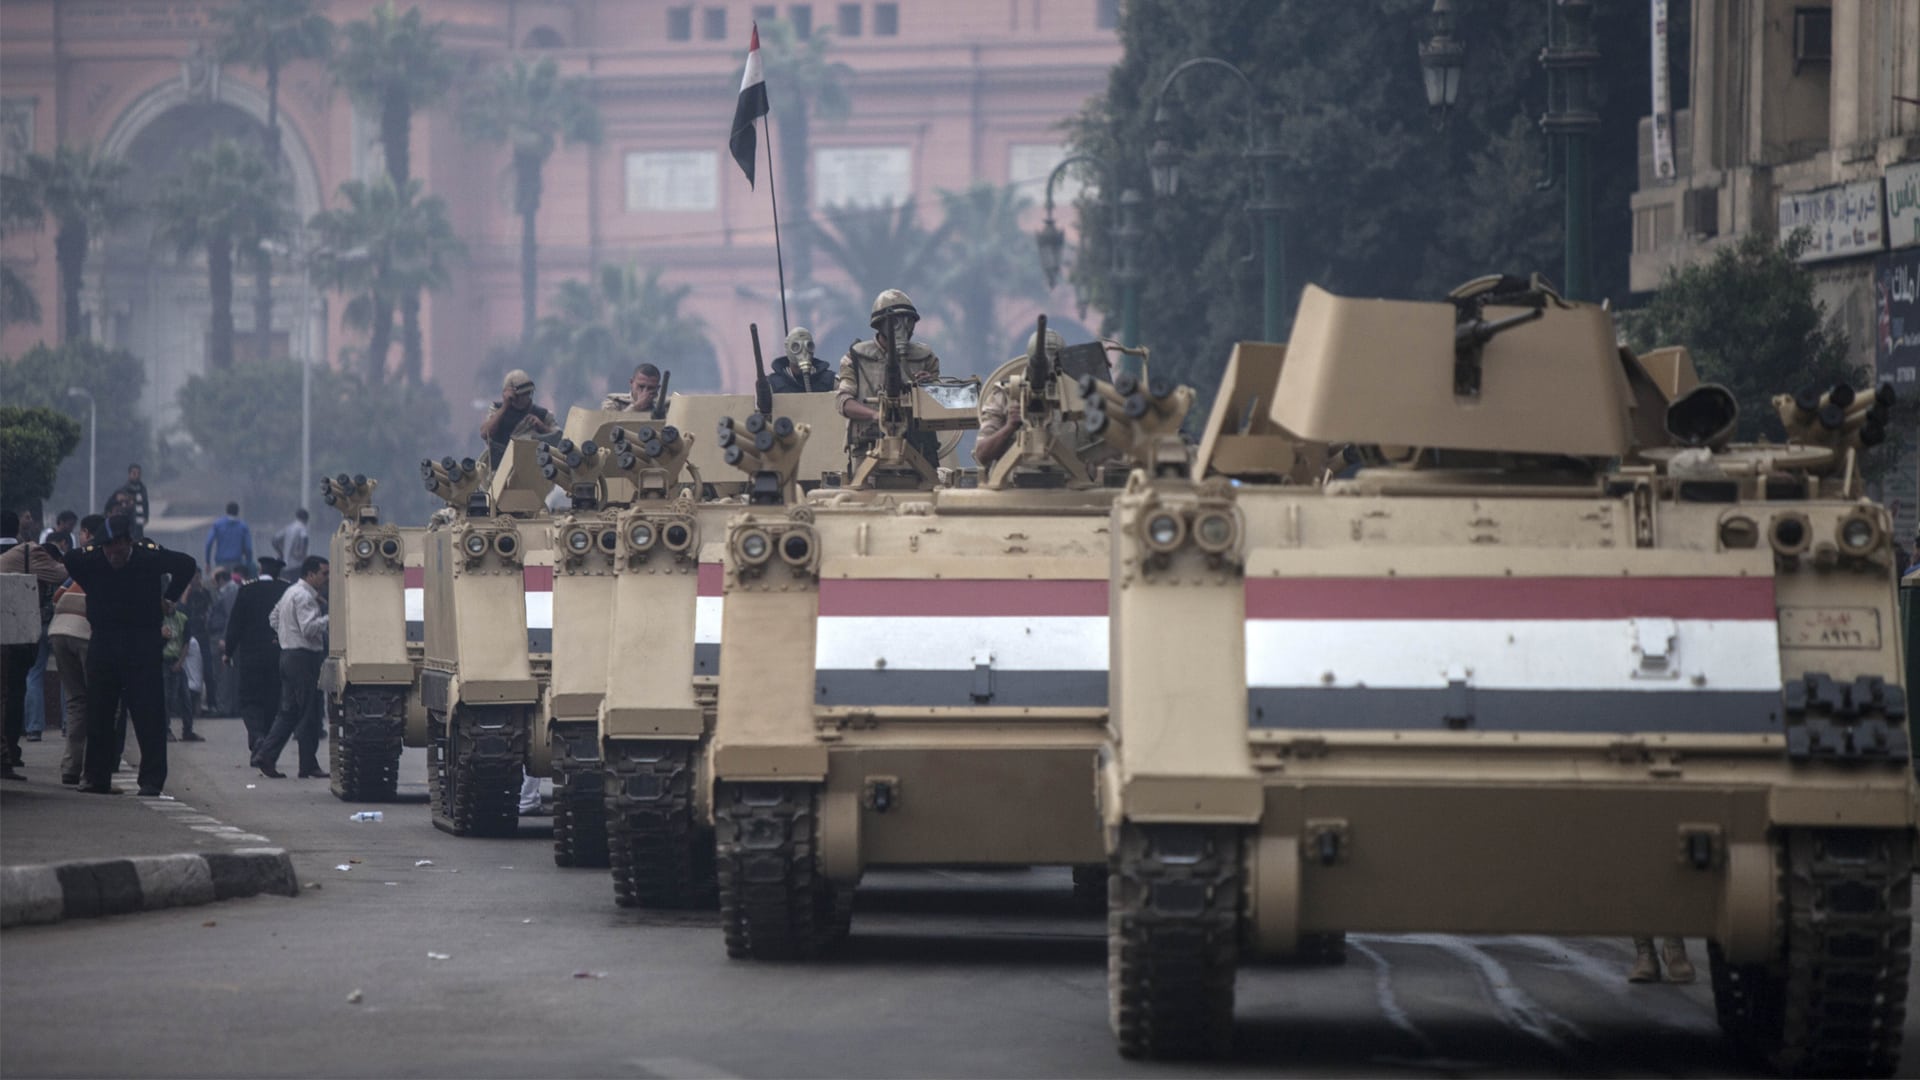 انقلاب عسكري في مصر alarabtrend.com